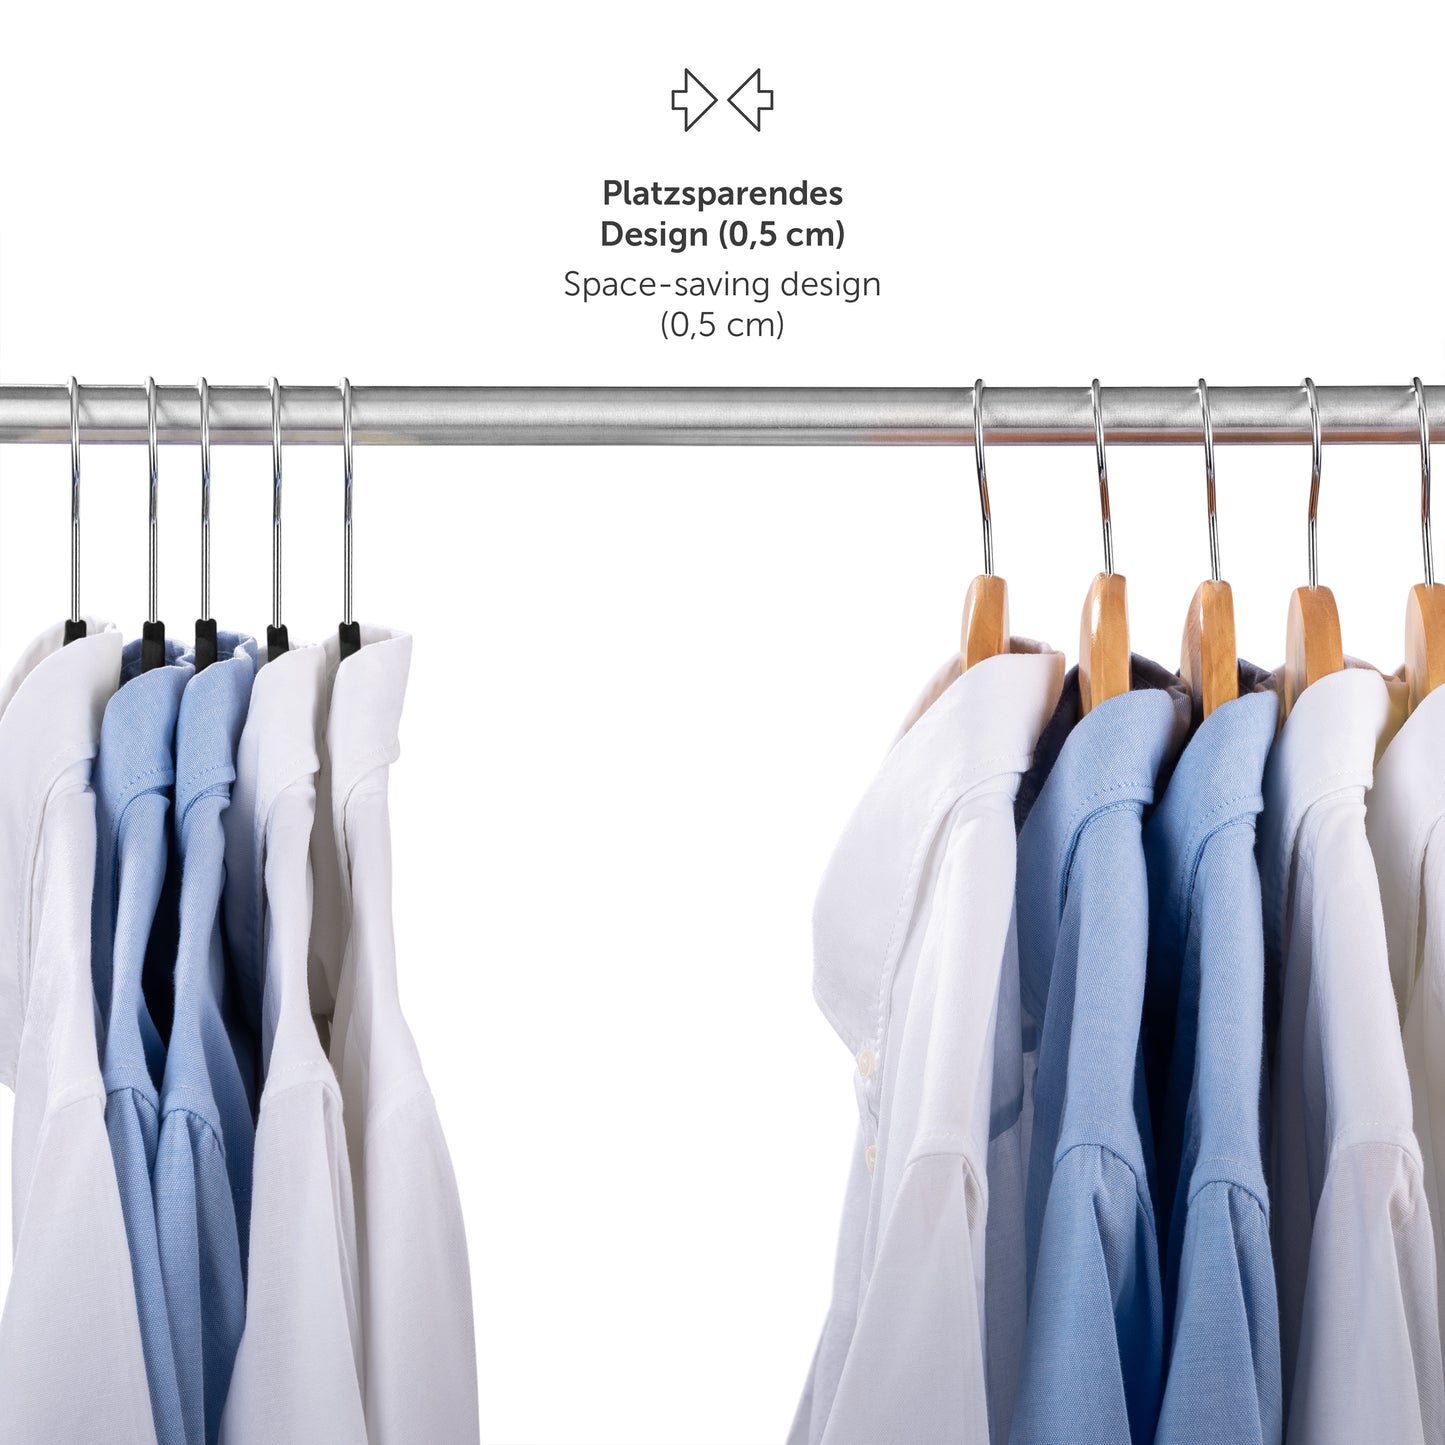 Kleiderbügel mit platzsparendem Design (05 cm Dicke) an einer Stange mit hängenden Hemden um die Effizienz im Kleiderschrank zu zeigen.